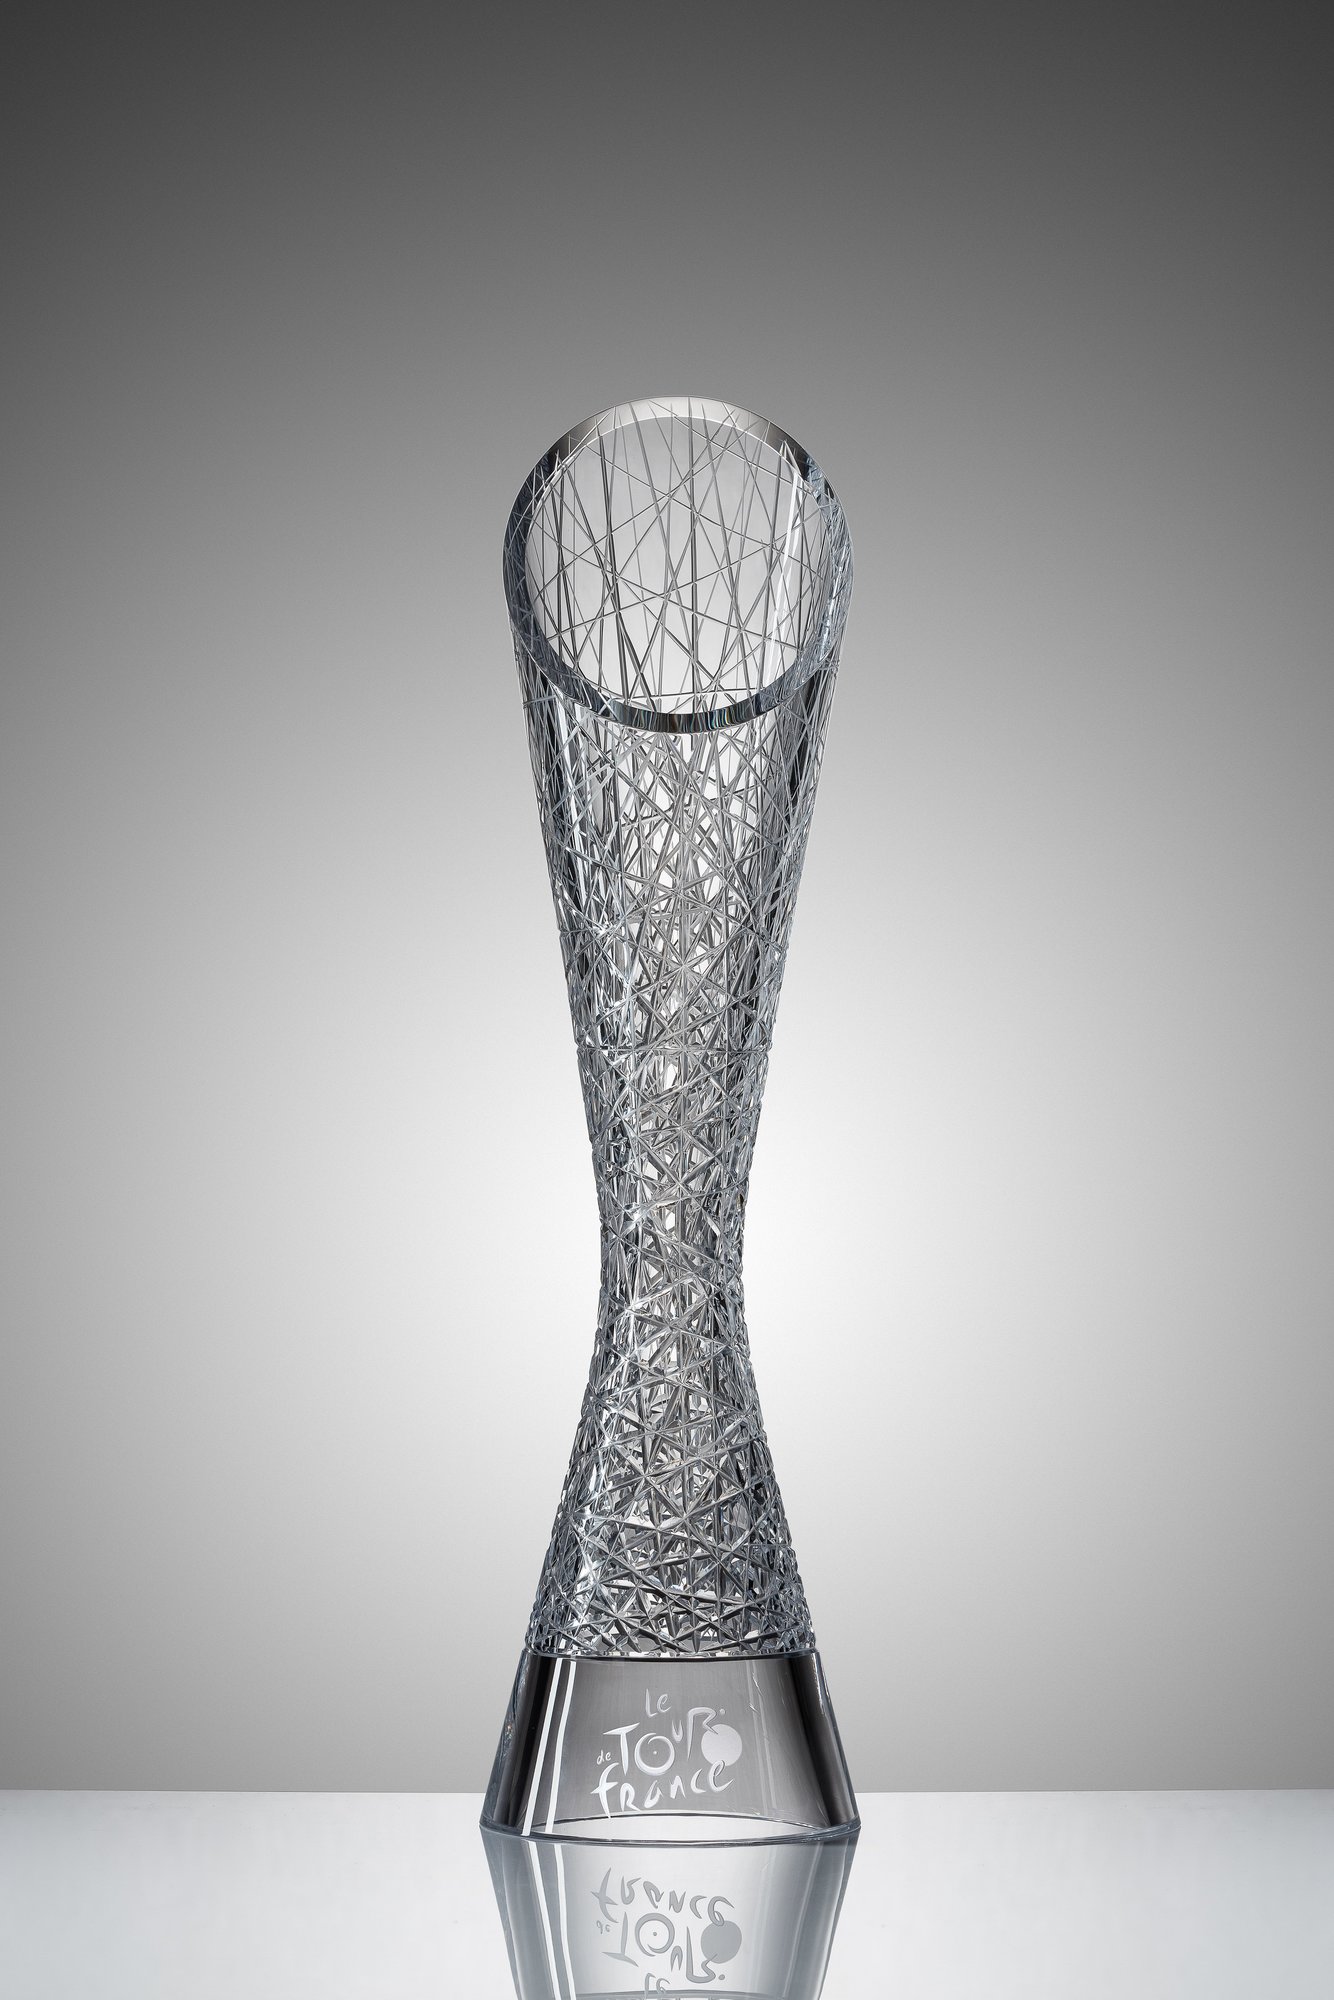 ŠKODA Design navrhl trofeje pro vítěze Tour de France